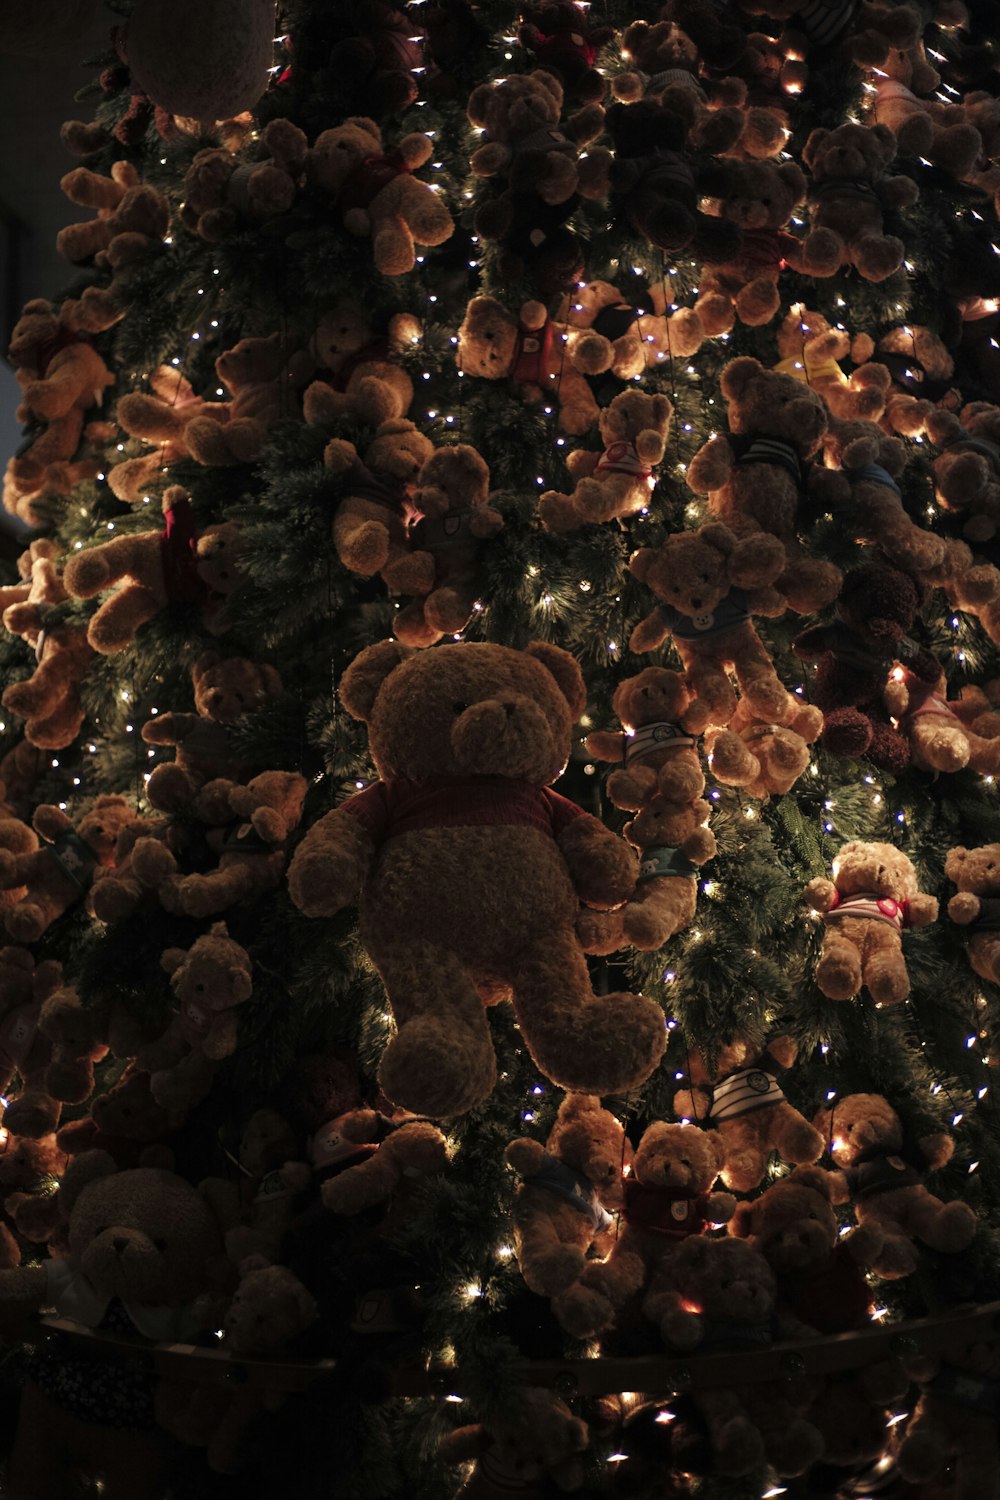 크리스마스 트리 위에 앉아있는 테디 베어